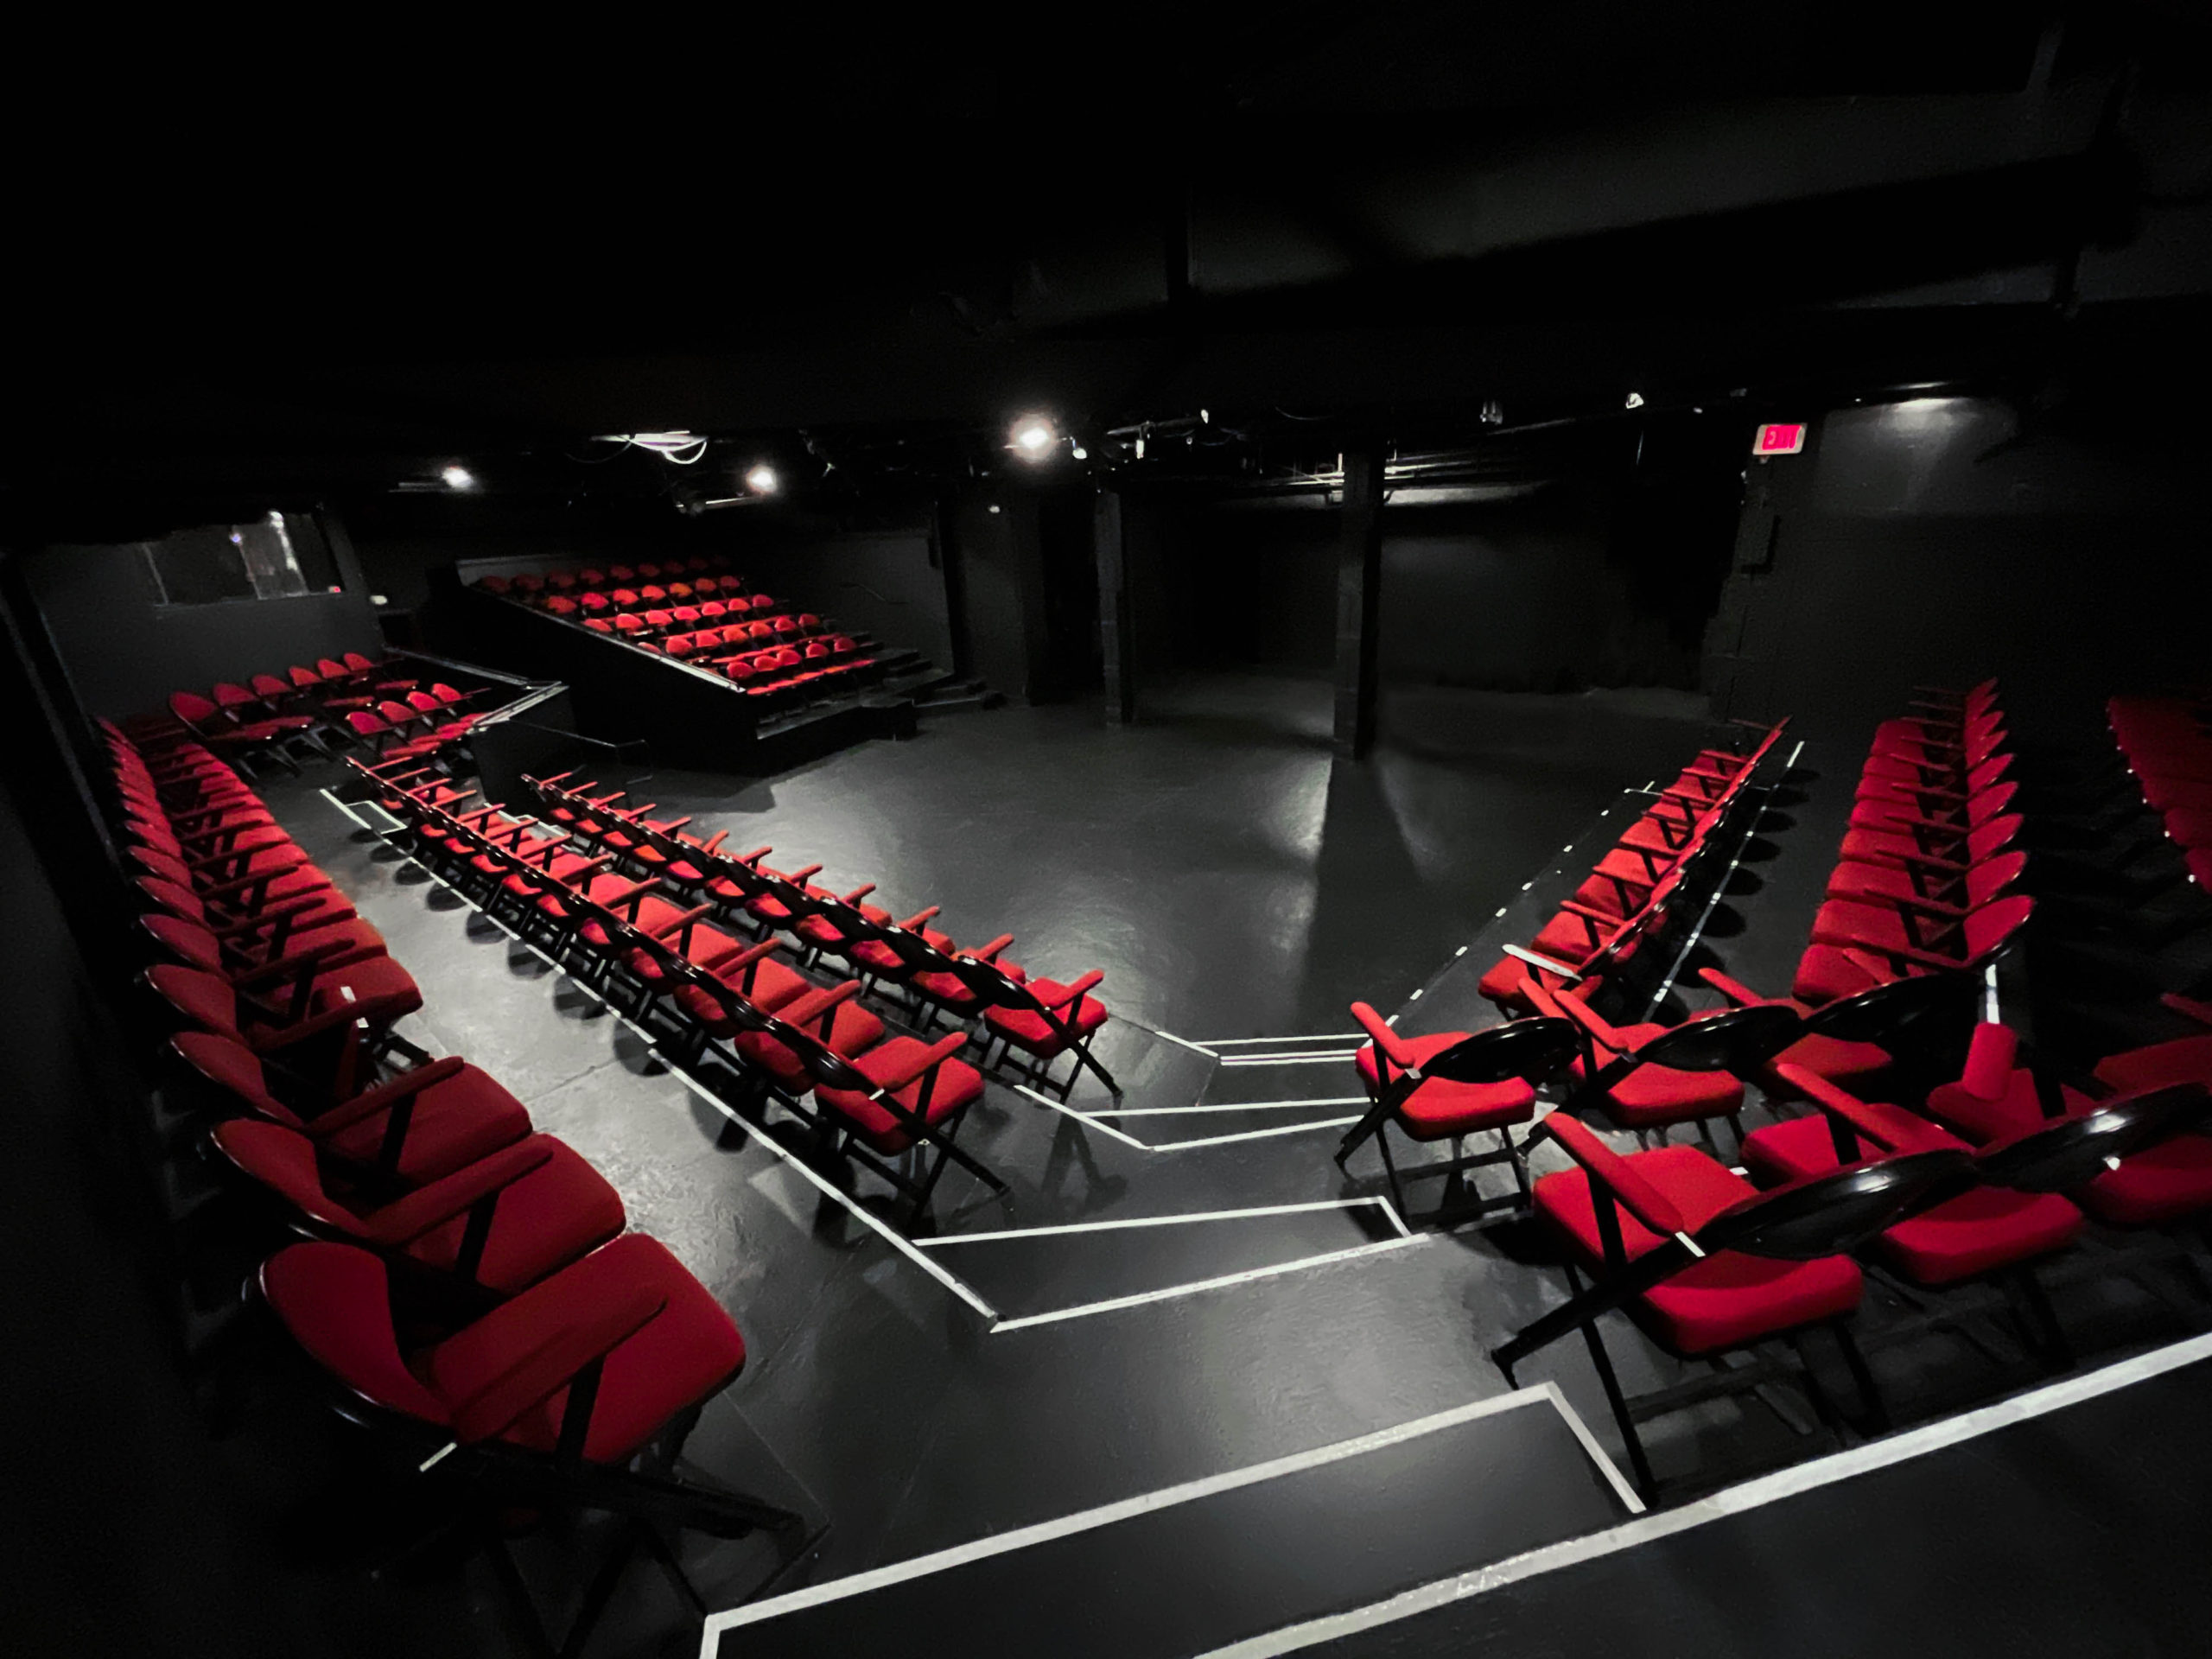 Booth Theatre – Boston Arts Plaza - Targetti